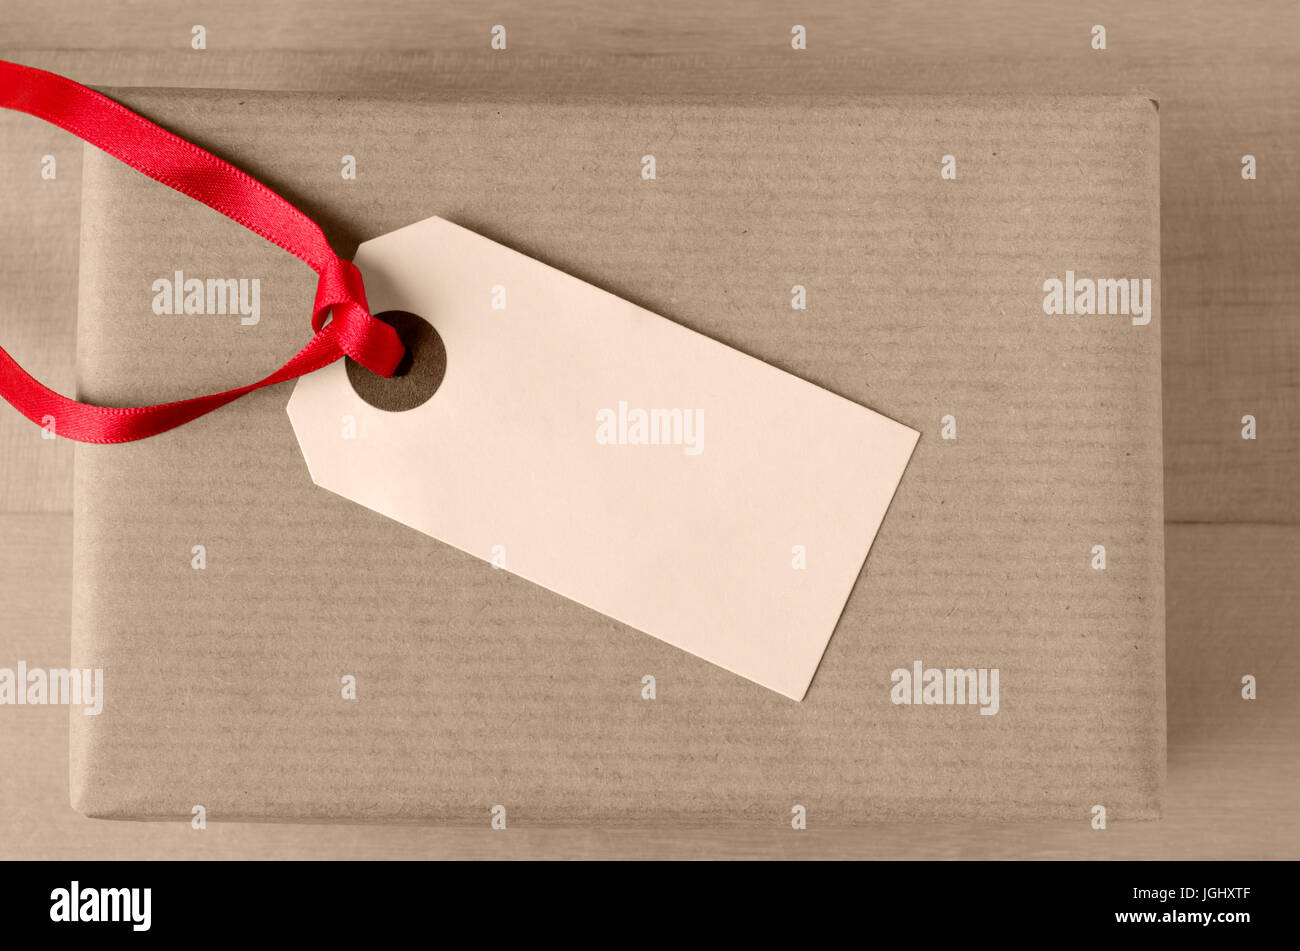 Overhead Schuss ein leeres Paket-Tag, mit roten Band gebunden und nach oben zeigt auf der Oberseite eine verpackte Packpapier-Geschenk-Paket. Stockfoto